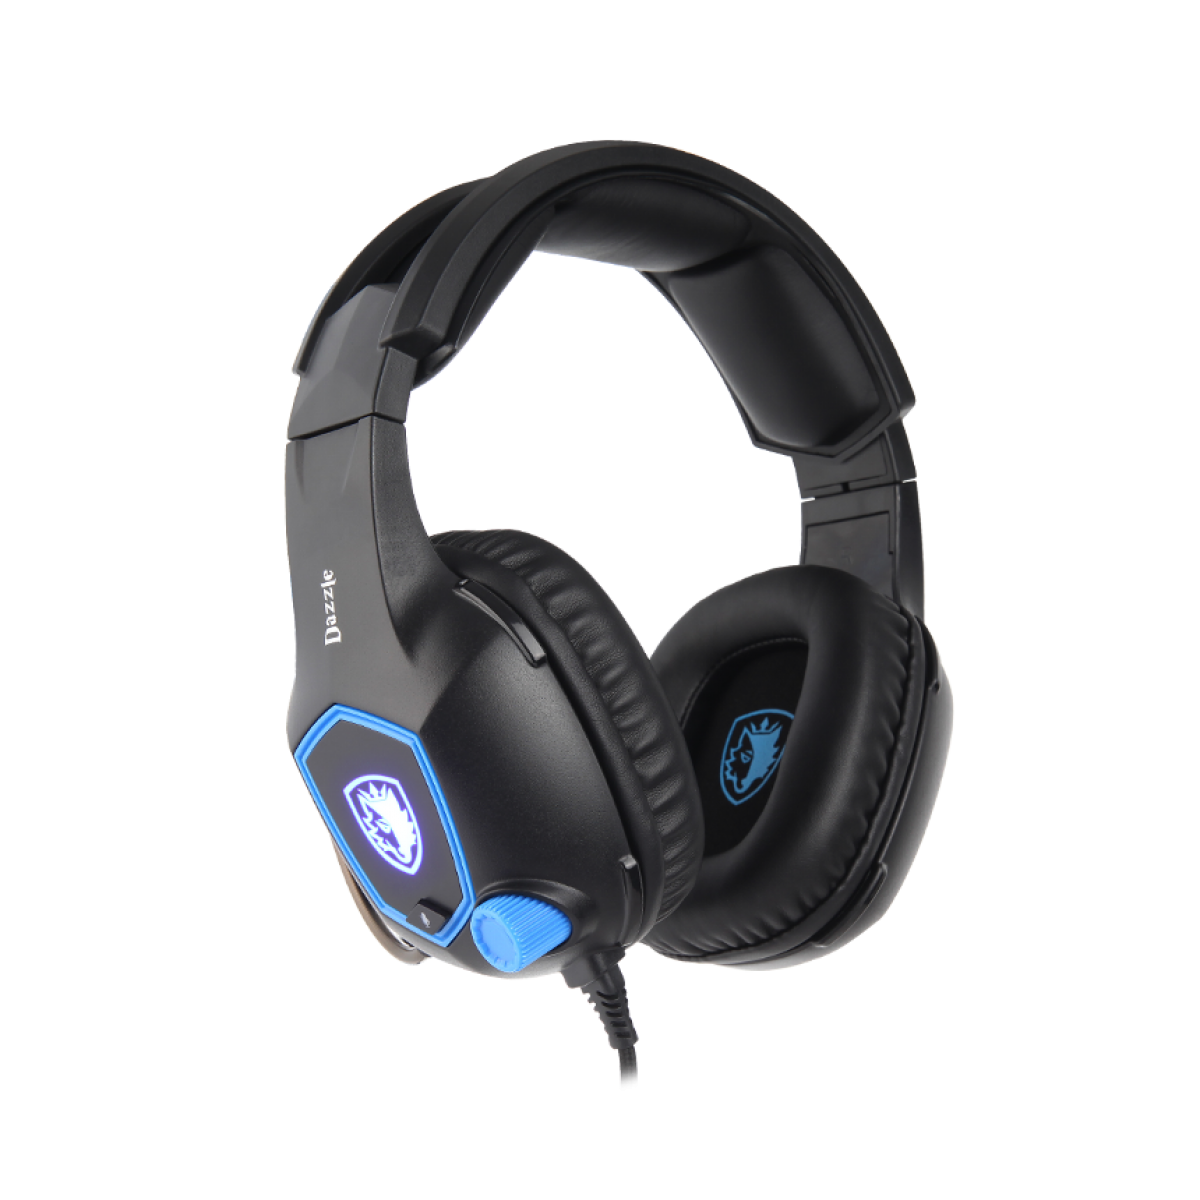 Headset Gamer Sades Sa-905 Dazzle, 7.1 Surround, Black/Blue, Sa-905